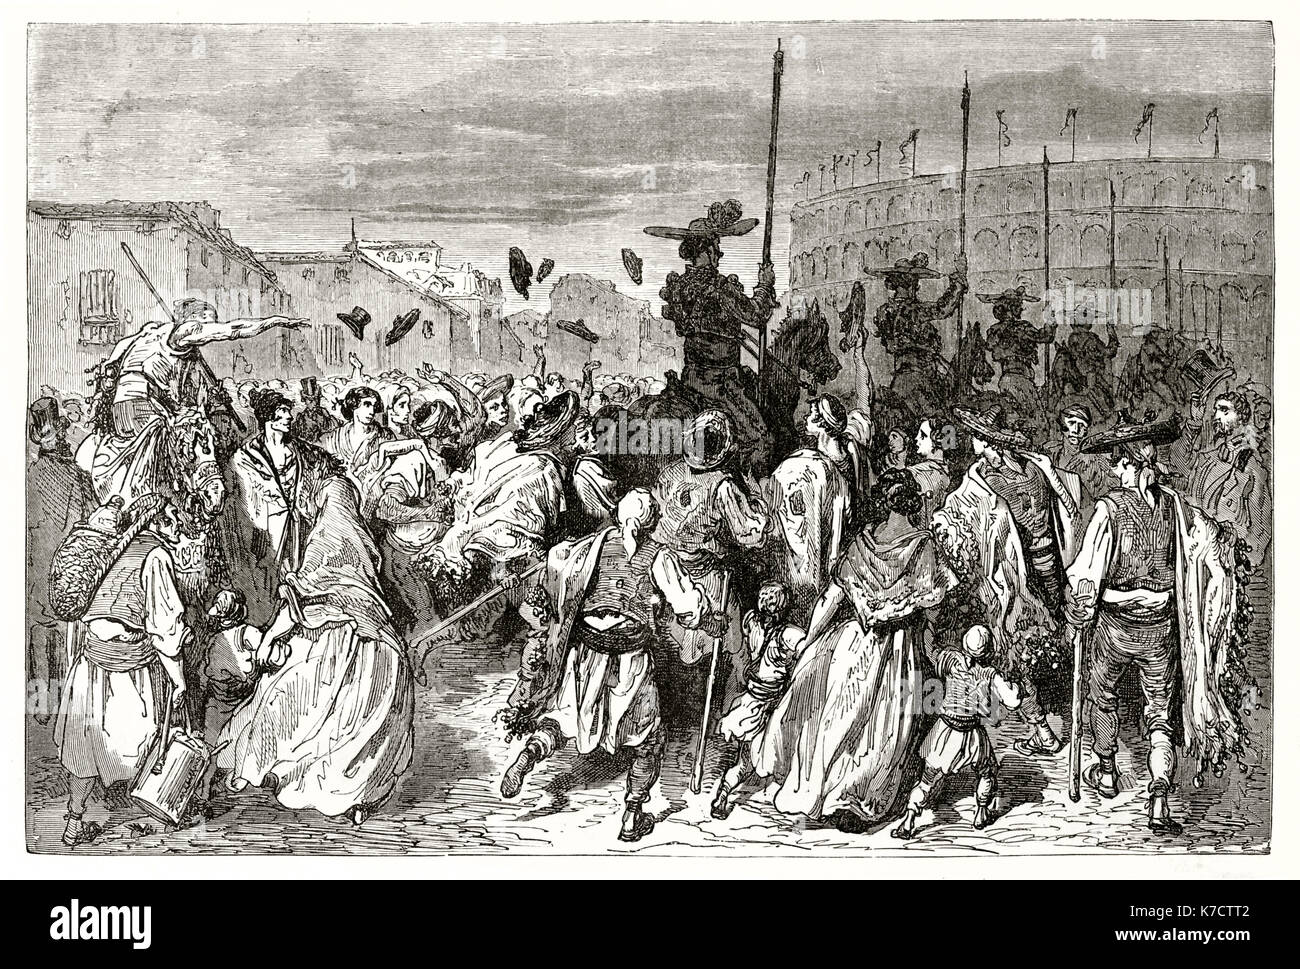 Vecchia immagine raffigurante picadores andando a l'arena, Spagna. Da Dore, publ. in Le Tour du Monde, Parigi, 1862 Foto Stock